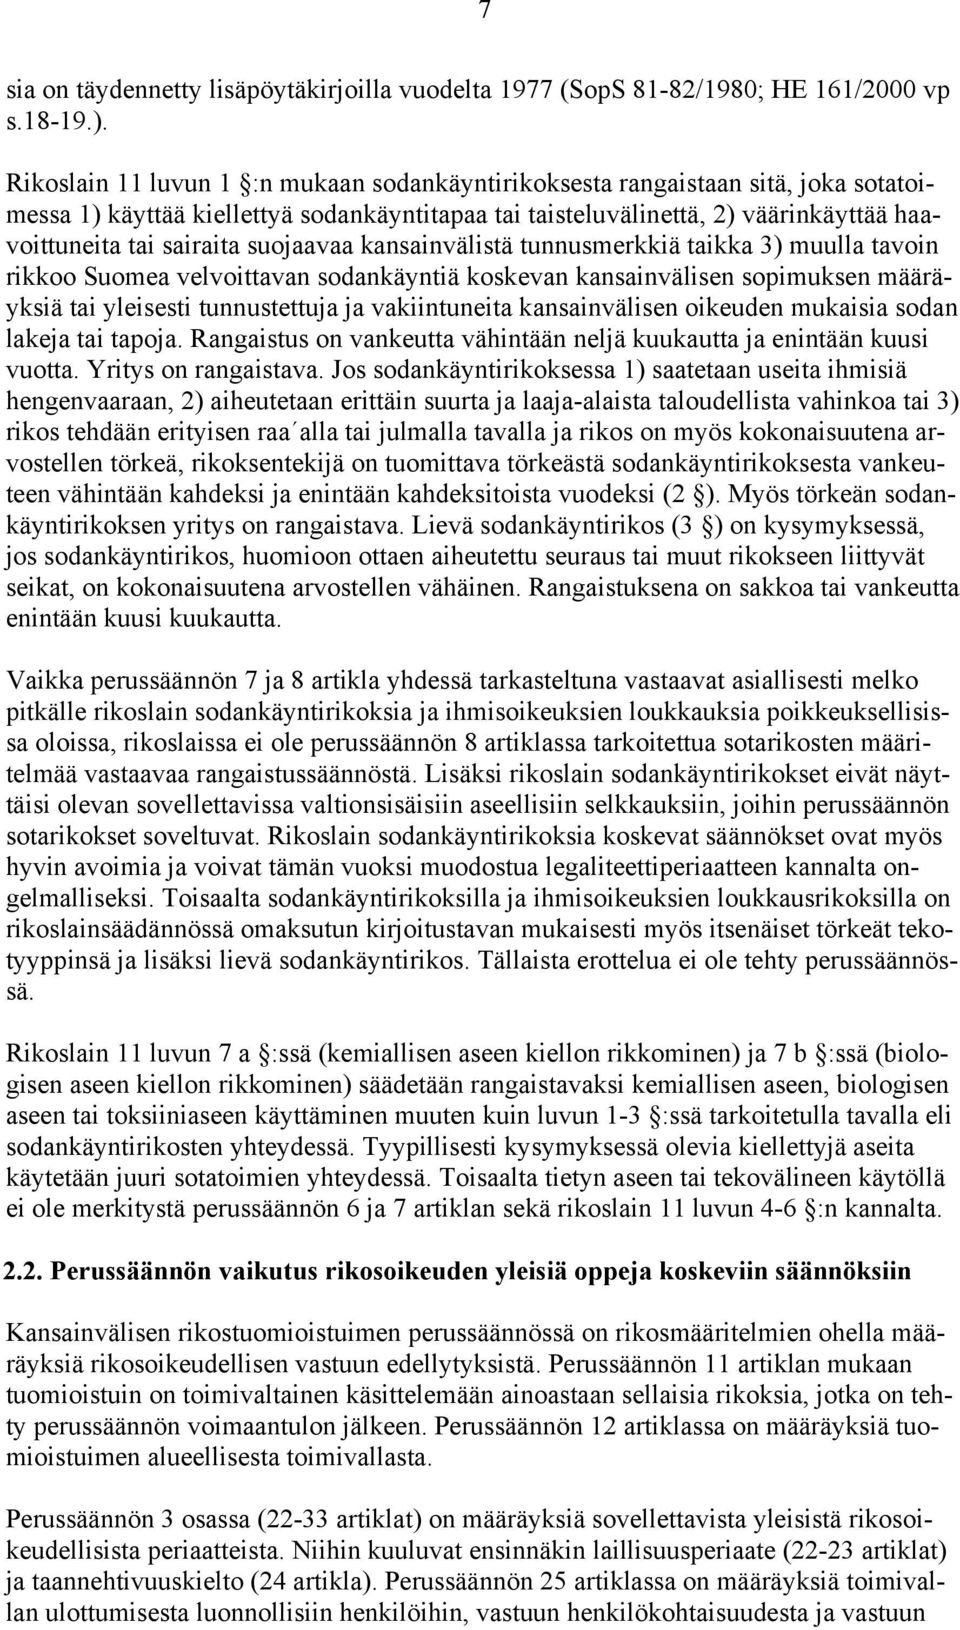 suojaavaa kansainvälistä tunnusmerkkiä taikka 3) muulla tavoin rikkoo Suomea velvoittavan sodankäyntiä koskevan kansainvälisen sopimuksen määräyksiä tai yleisesti tunnustettuja ja vakiintuneita